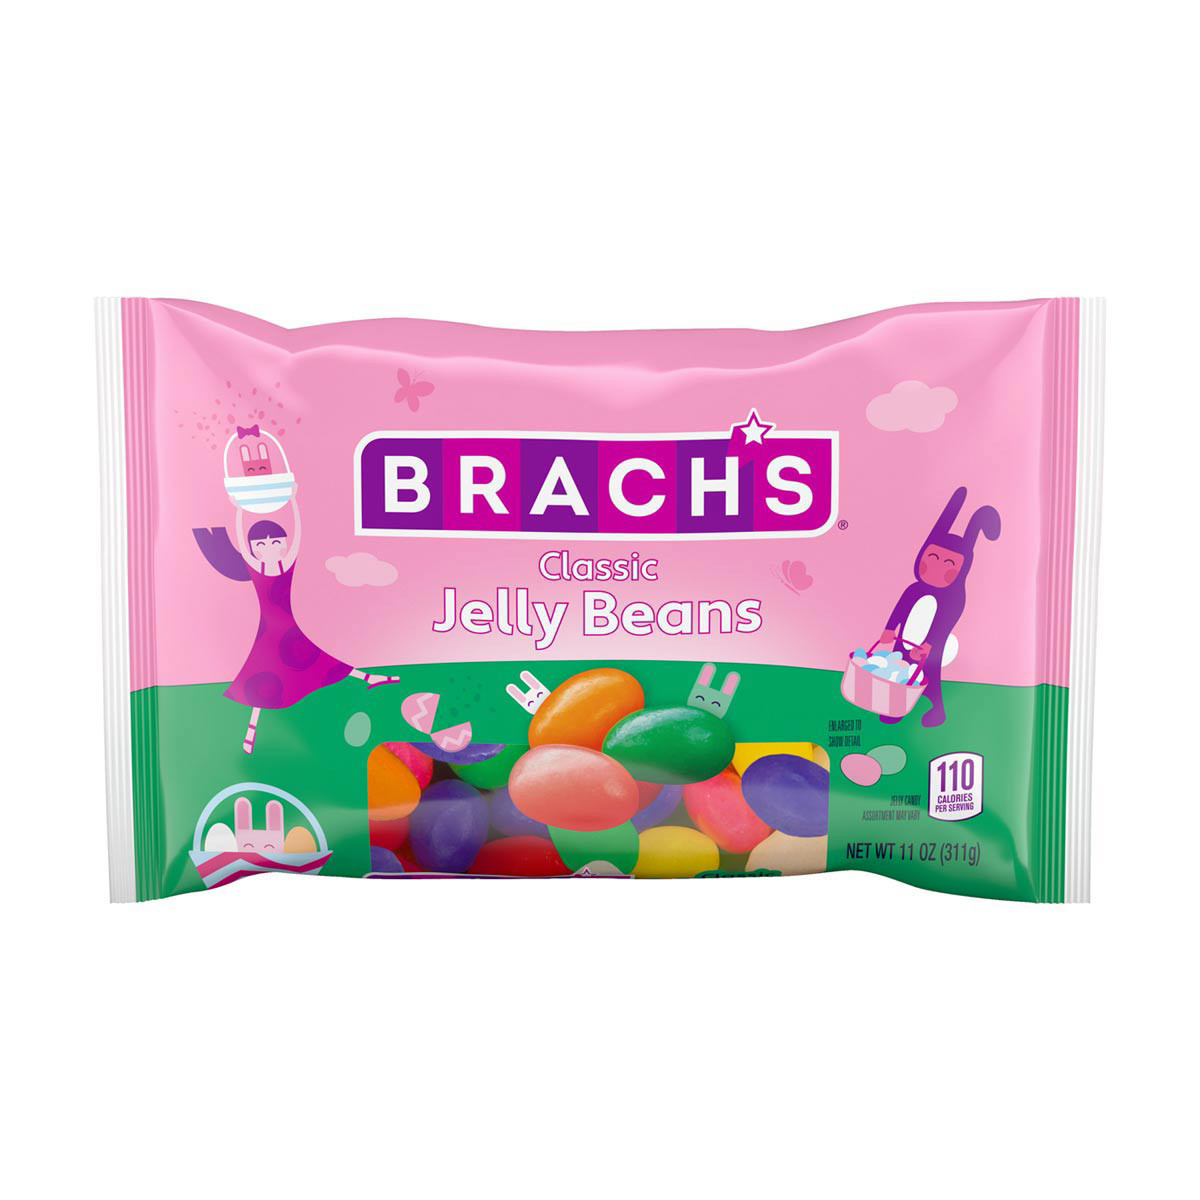 Brach's Sugar Free Hard Candies Variety Pack, 6 ct / 3.5 oz - Jay